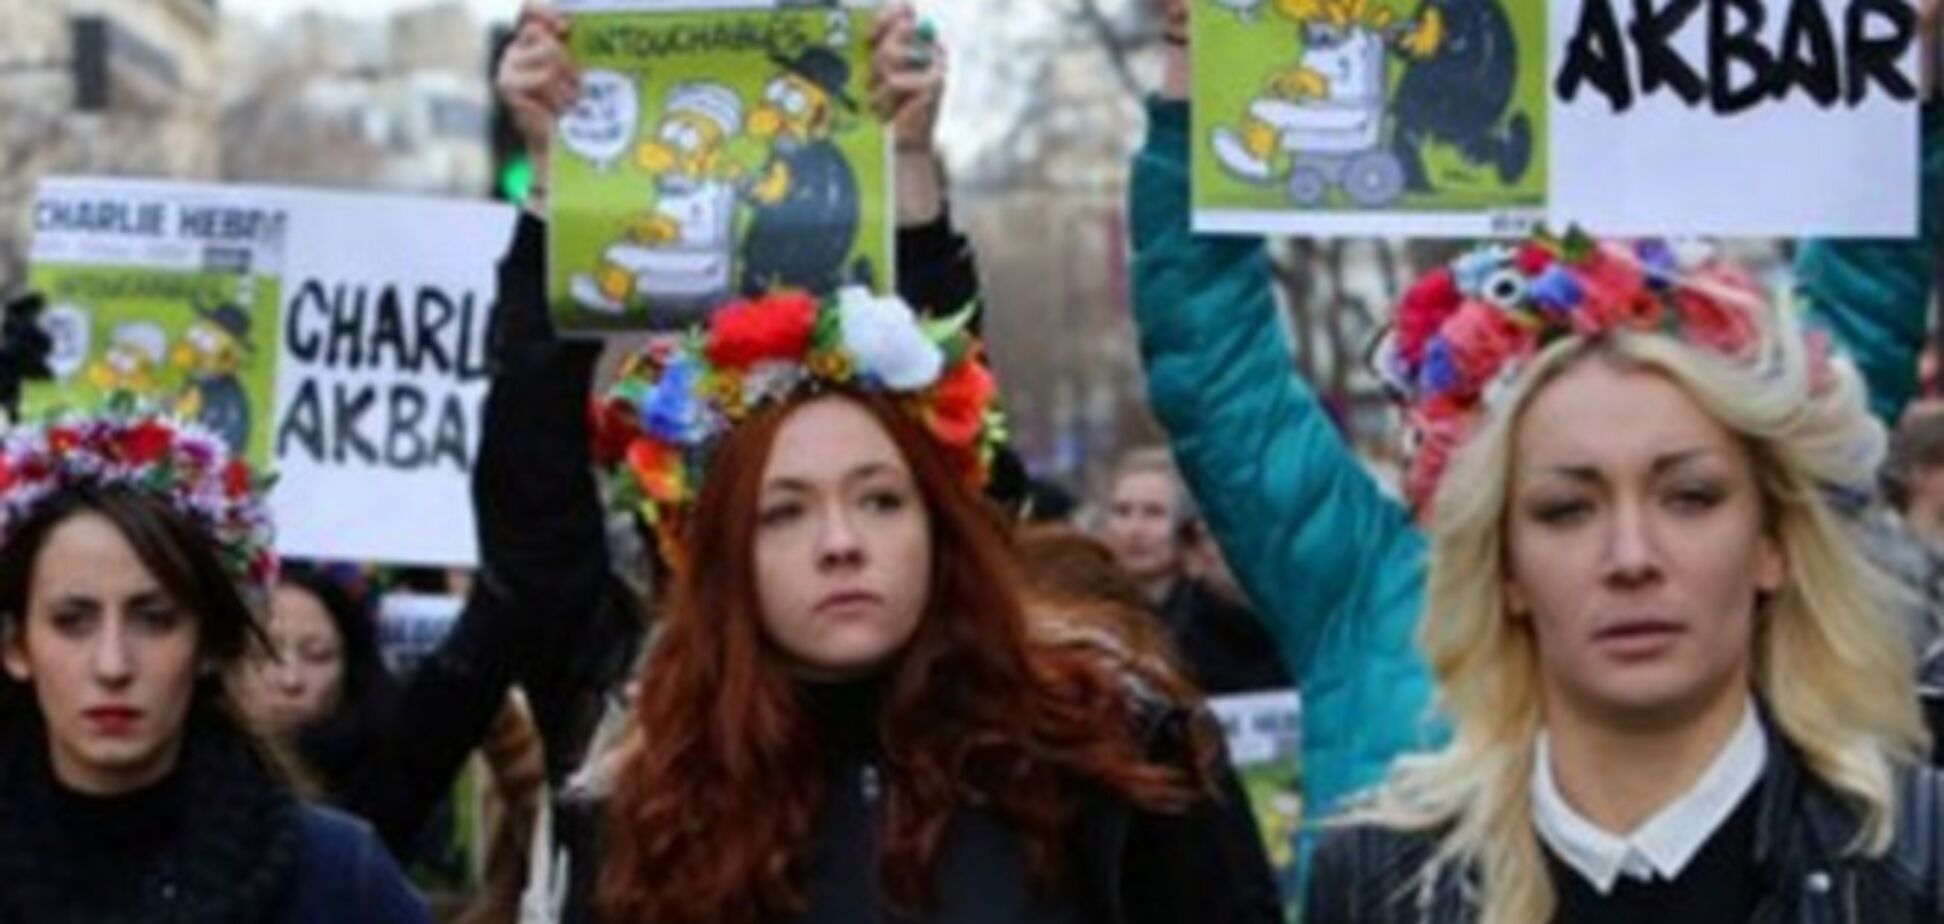 Charlie Akbar! Femen с карандашами-автоматами вышли на Марш единства в Париже: фотофакт